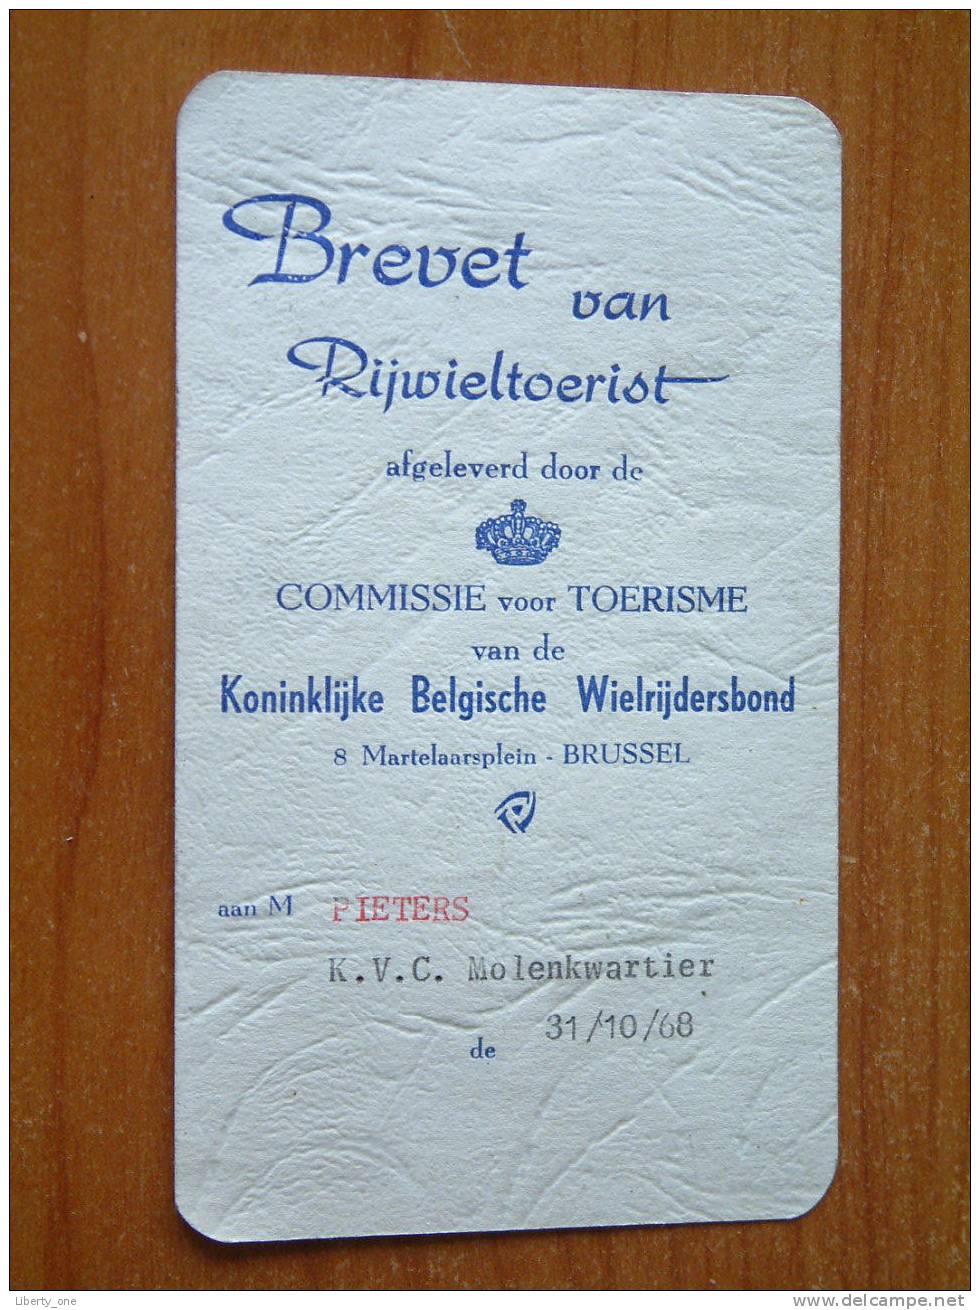 BREVET VAN RIJWIELTOERIST Aan PIETERS Flor - KVC Molenkwartier 31.10.1968 ( Zie Details Op Foto ) !! - Wielrennen